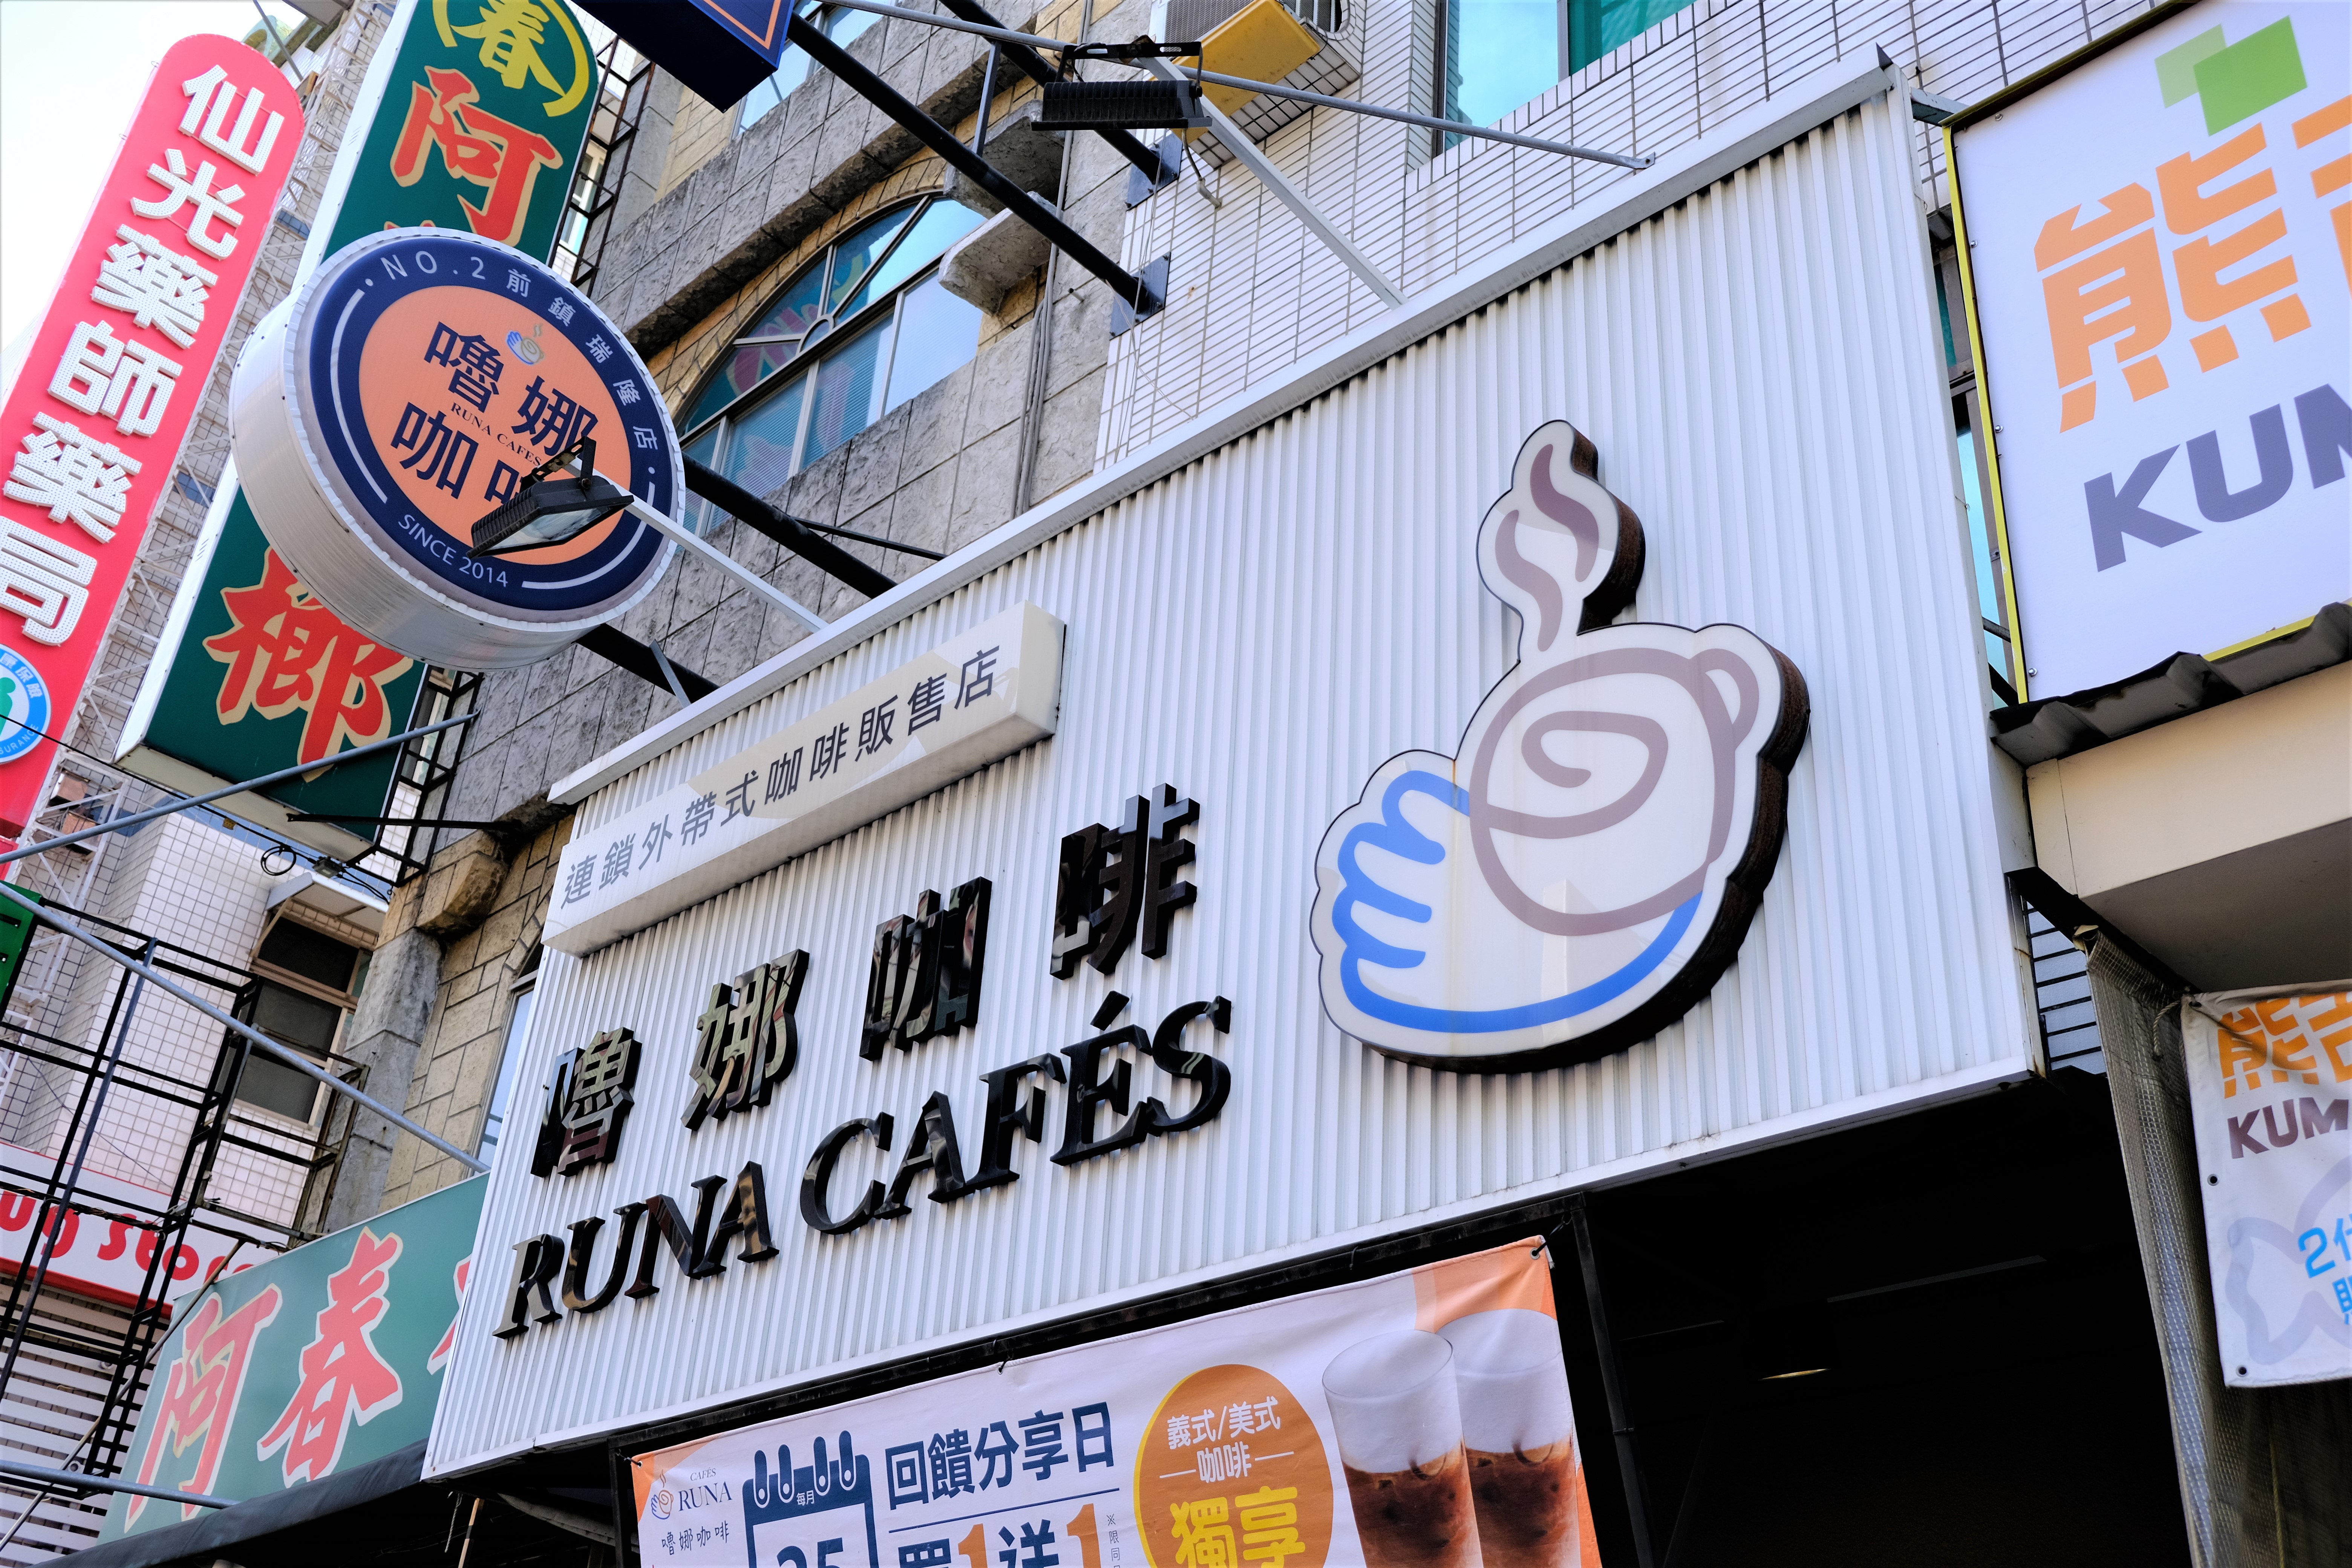 嚕娜咖啡 RUNA CAFÉS(前鎮瑞隆店)